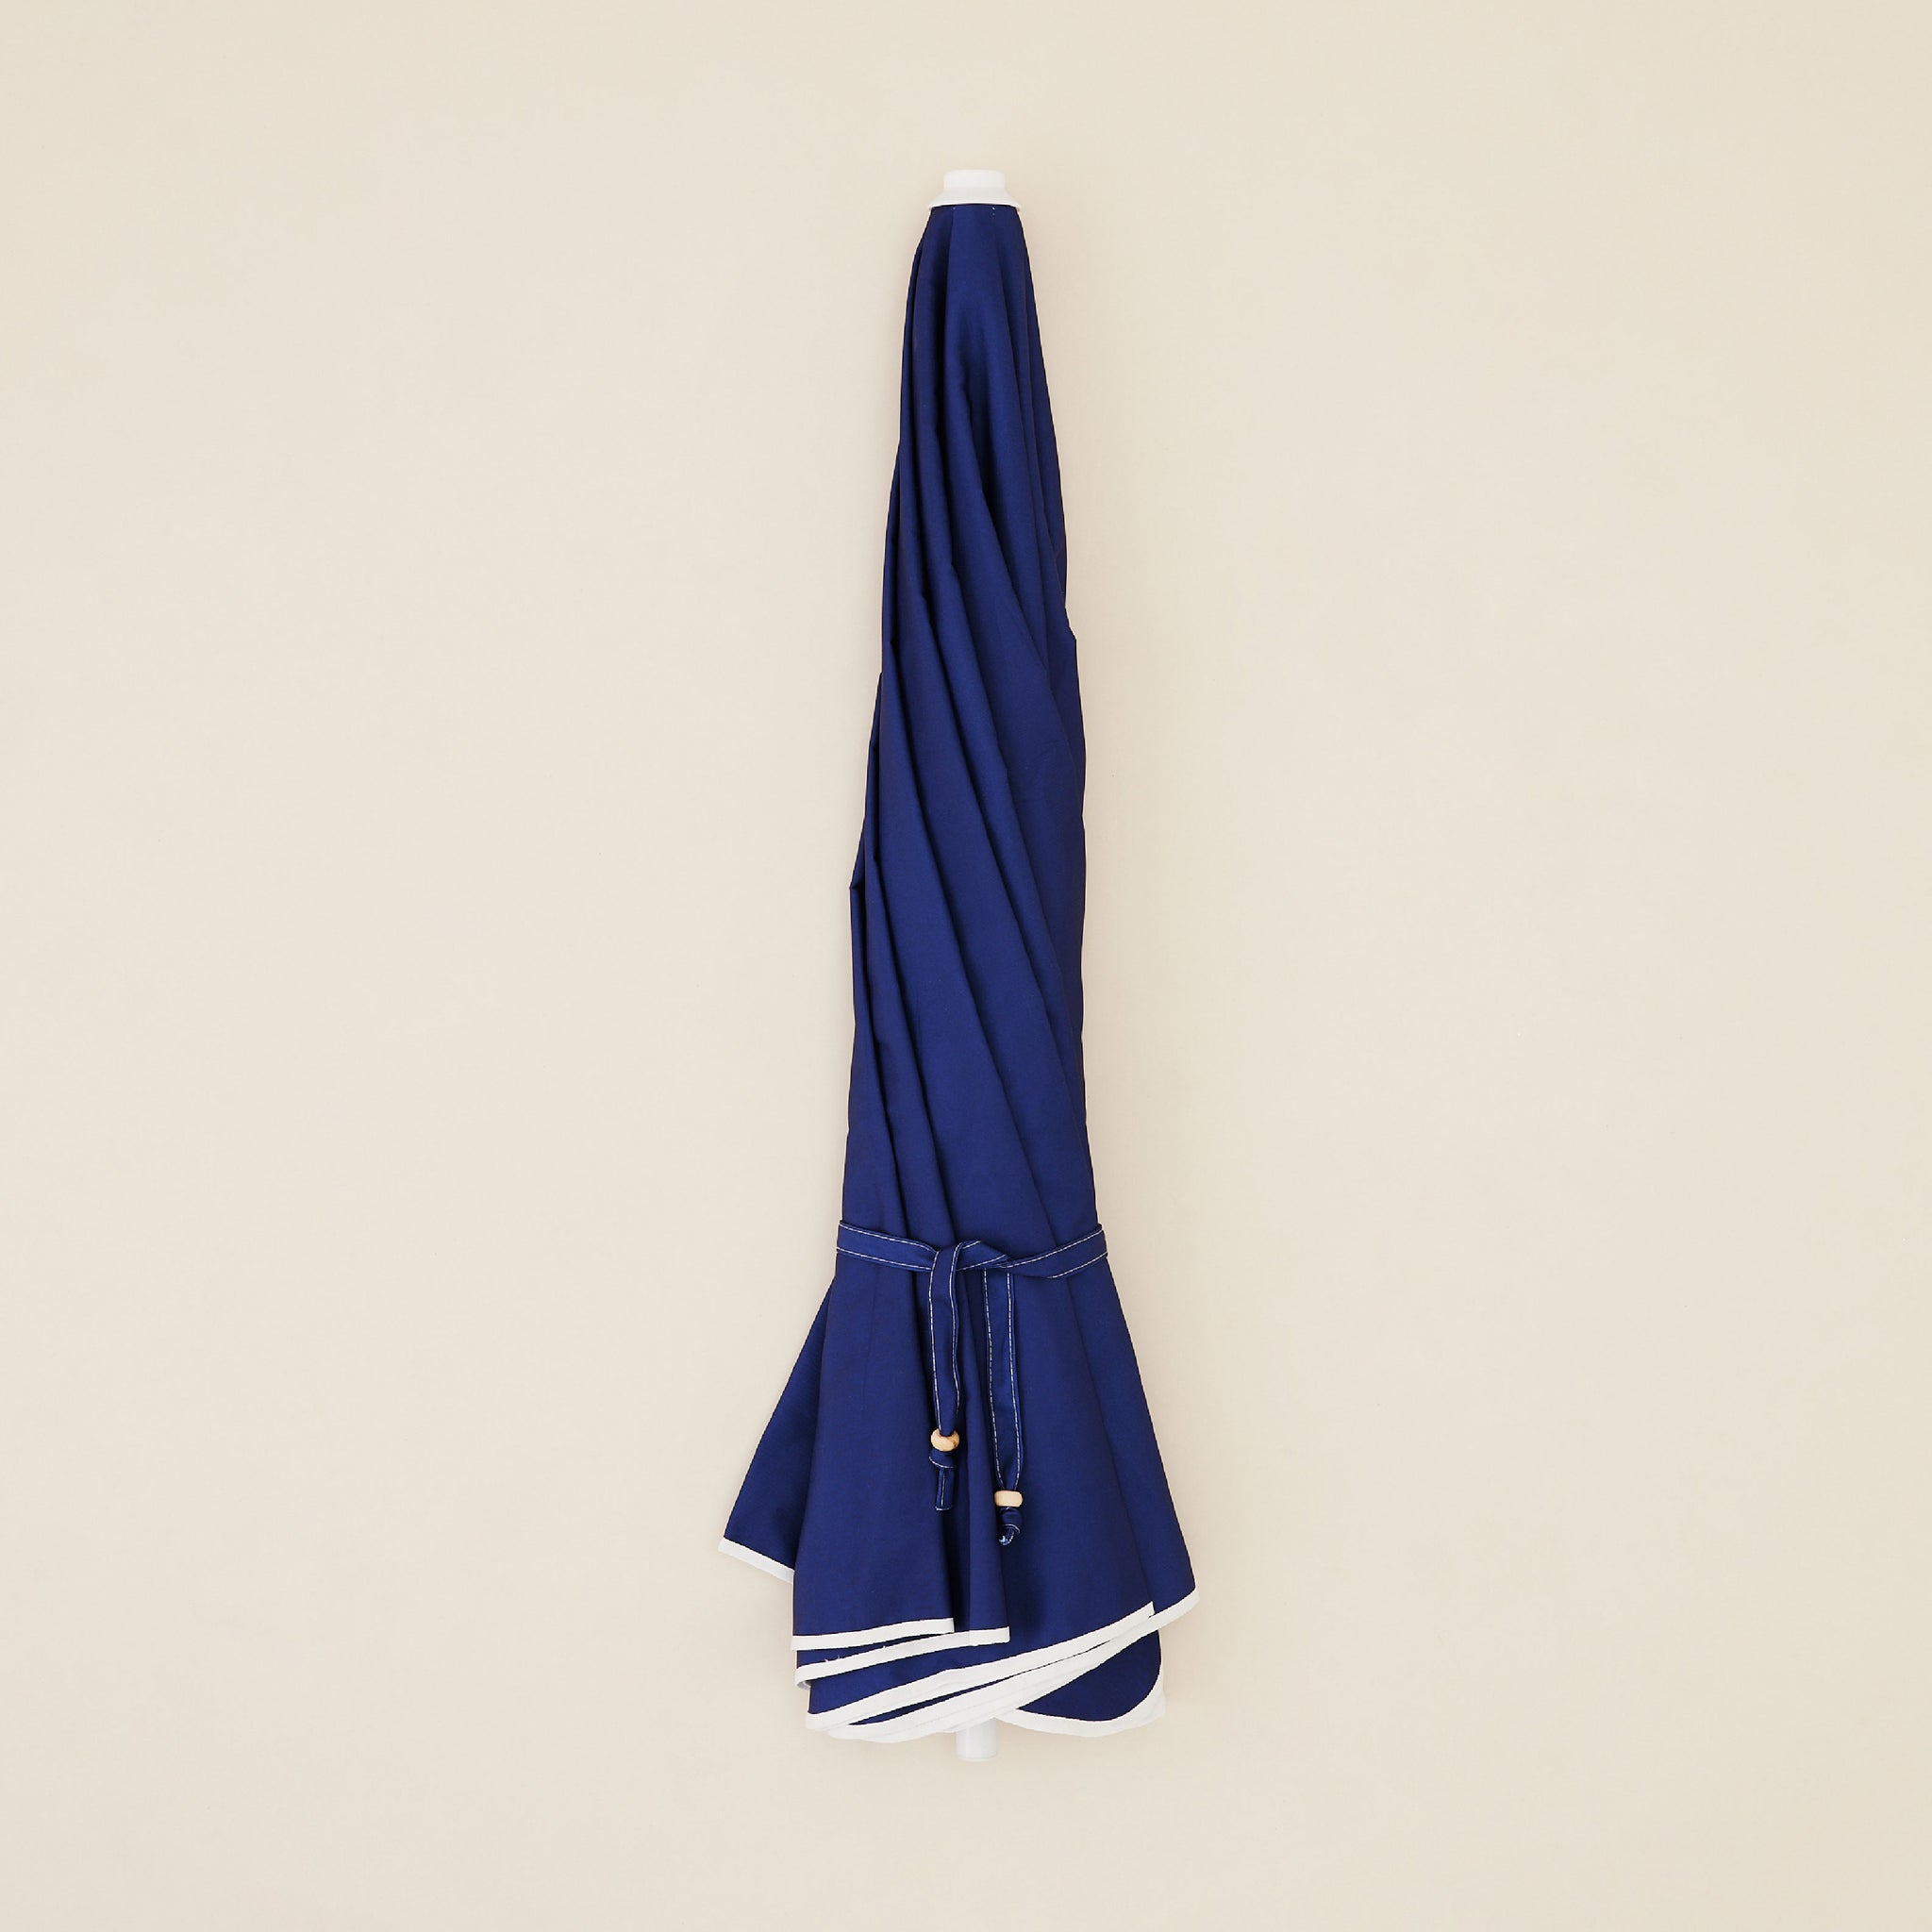 Dark Blue Beach Umbrella | ร่มชายหาด